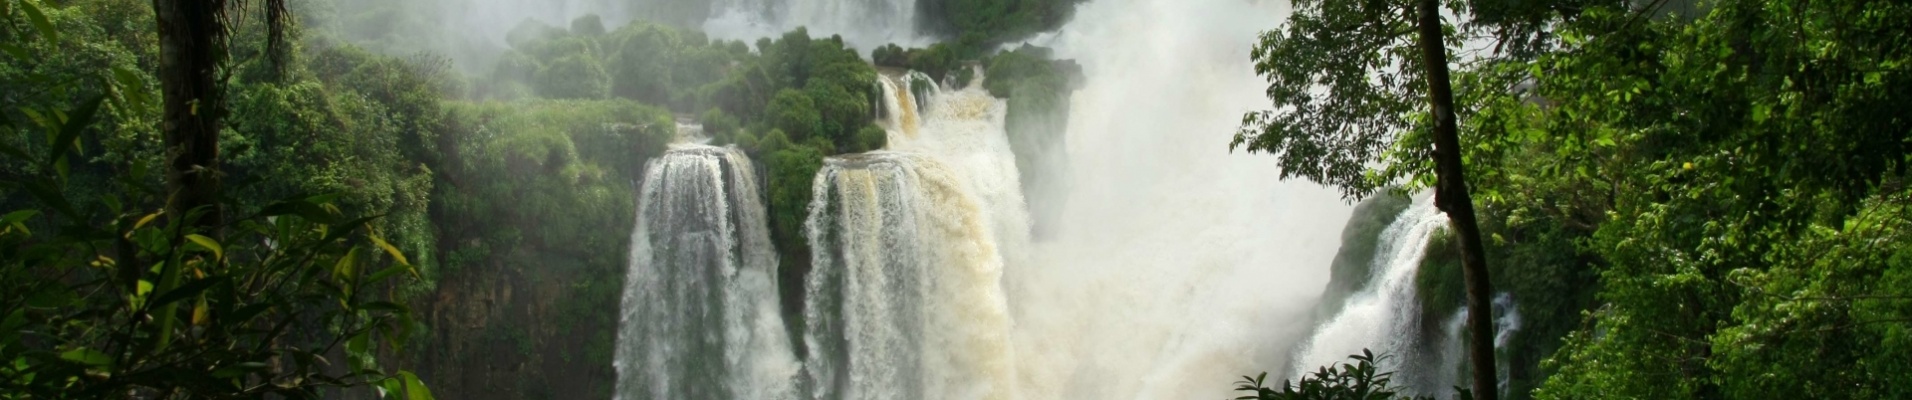 Chutes d'Iguaçu émergeant de la jungle brésilienne